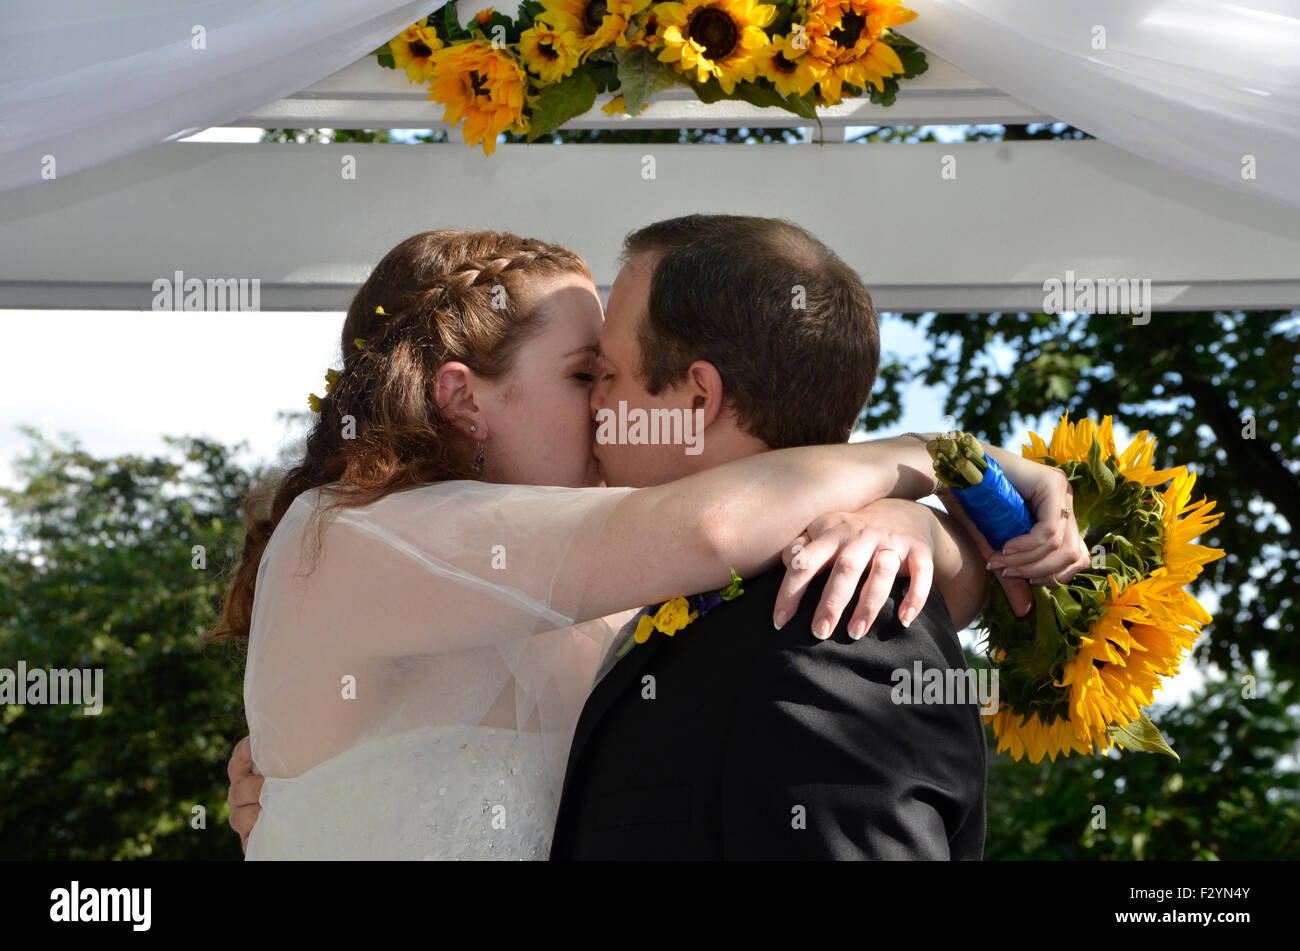 Il marito e la moglie hanno un appassionato bacio in occasione delle nozze Foto Stock